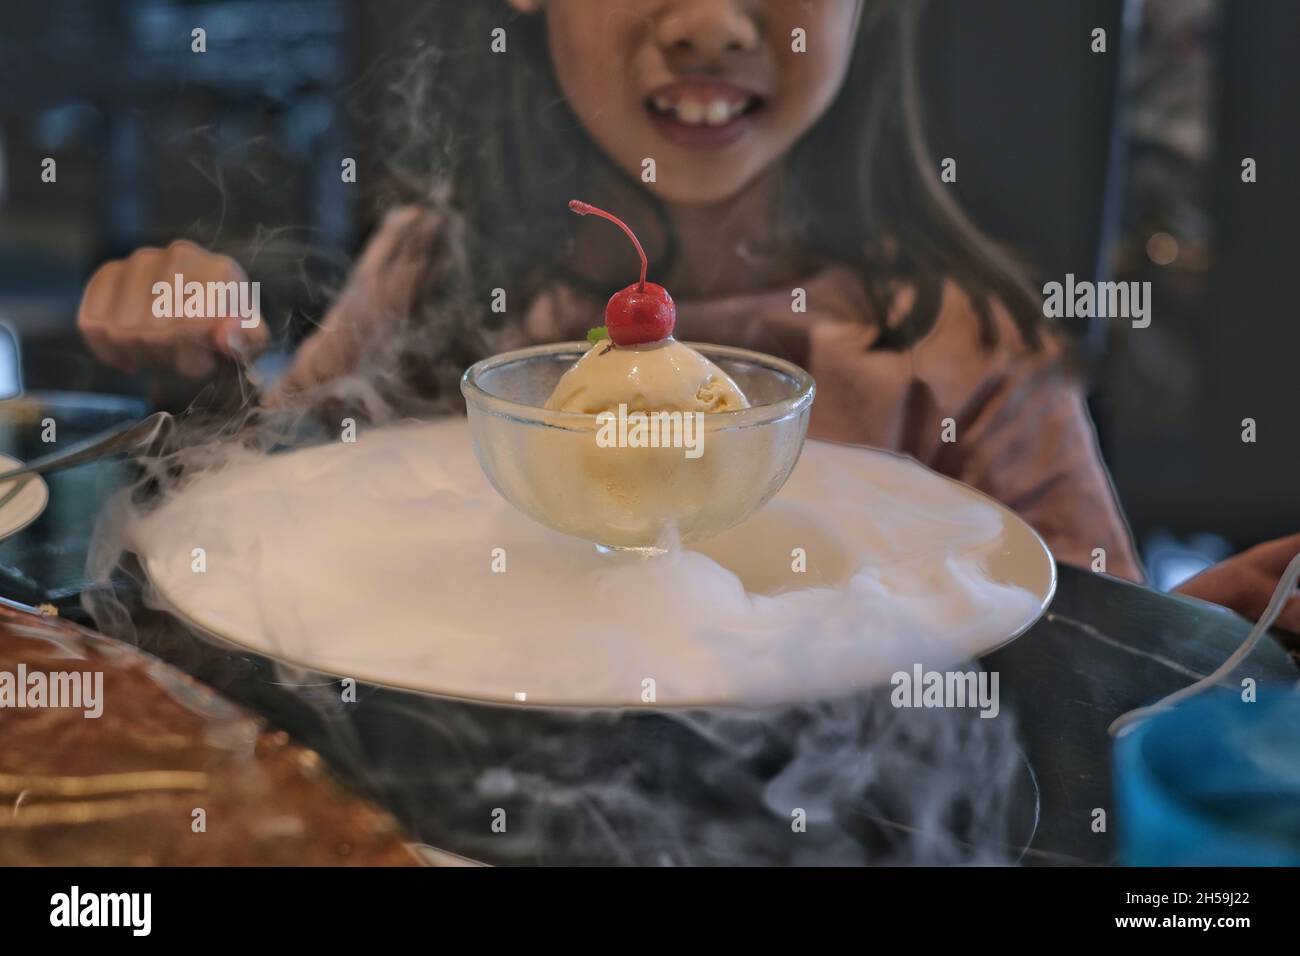 Une jolie jeune fille asiatique est assise dans un restaurant, en mangeant un bol de glace à la vanille, décorée de fumée blanche de glace sèche, avec garniture de cerise.K Banque D'Images